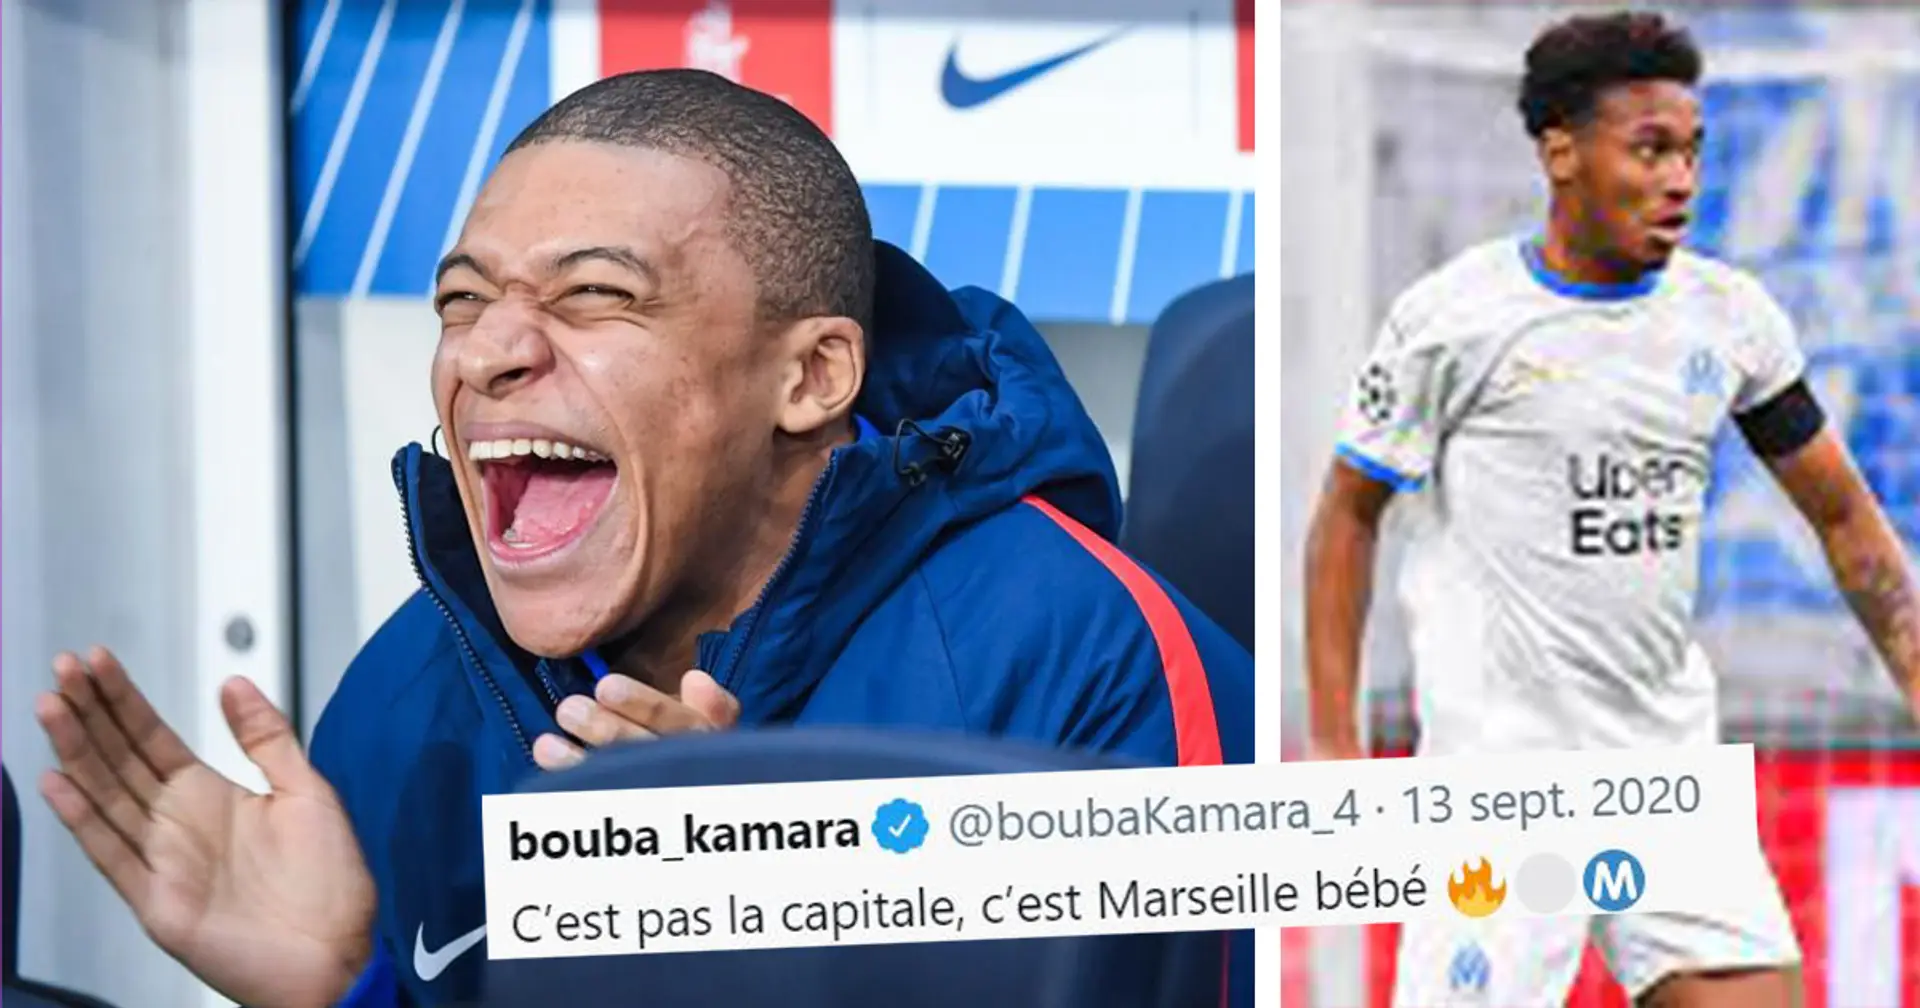 😜 "C’est pas la capitale, c’est Marseille bébé" Kamara silencieux alors qu'il est absent de la liste pour l'Euro Espoirs